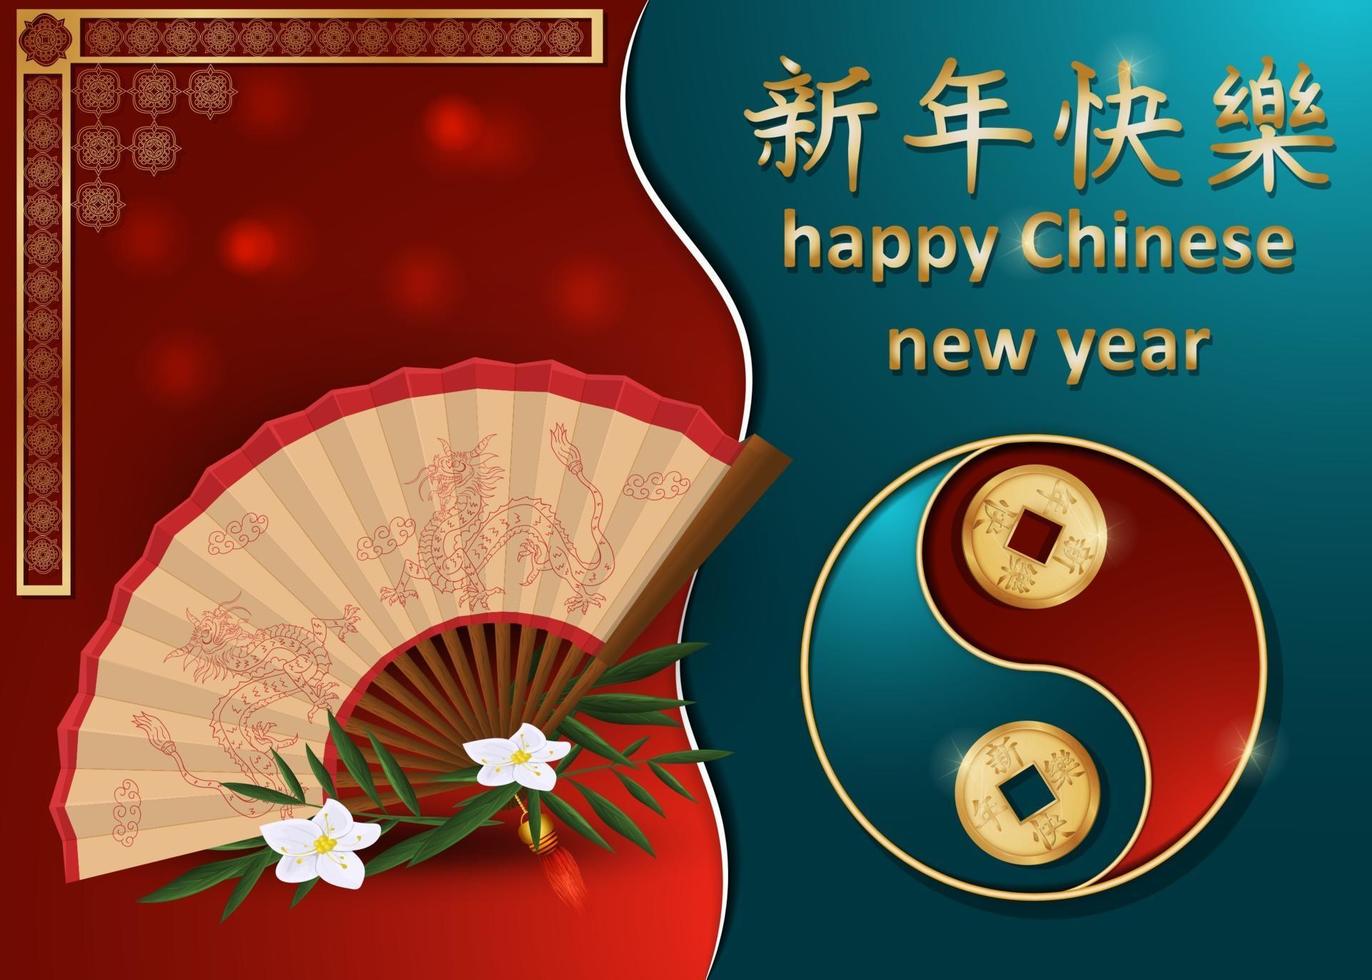 conception de cartes de voeux de nouvel an chinois vecteur